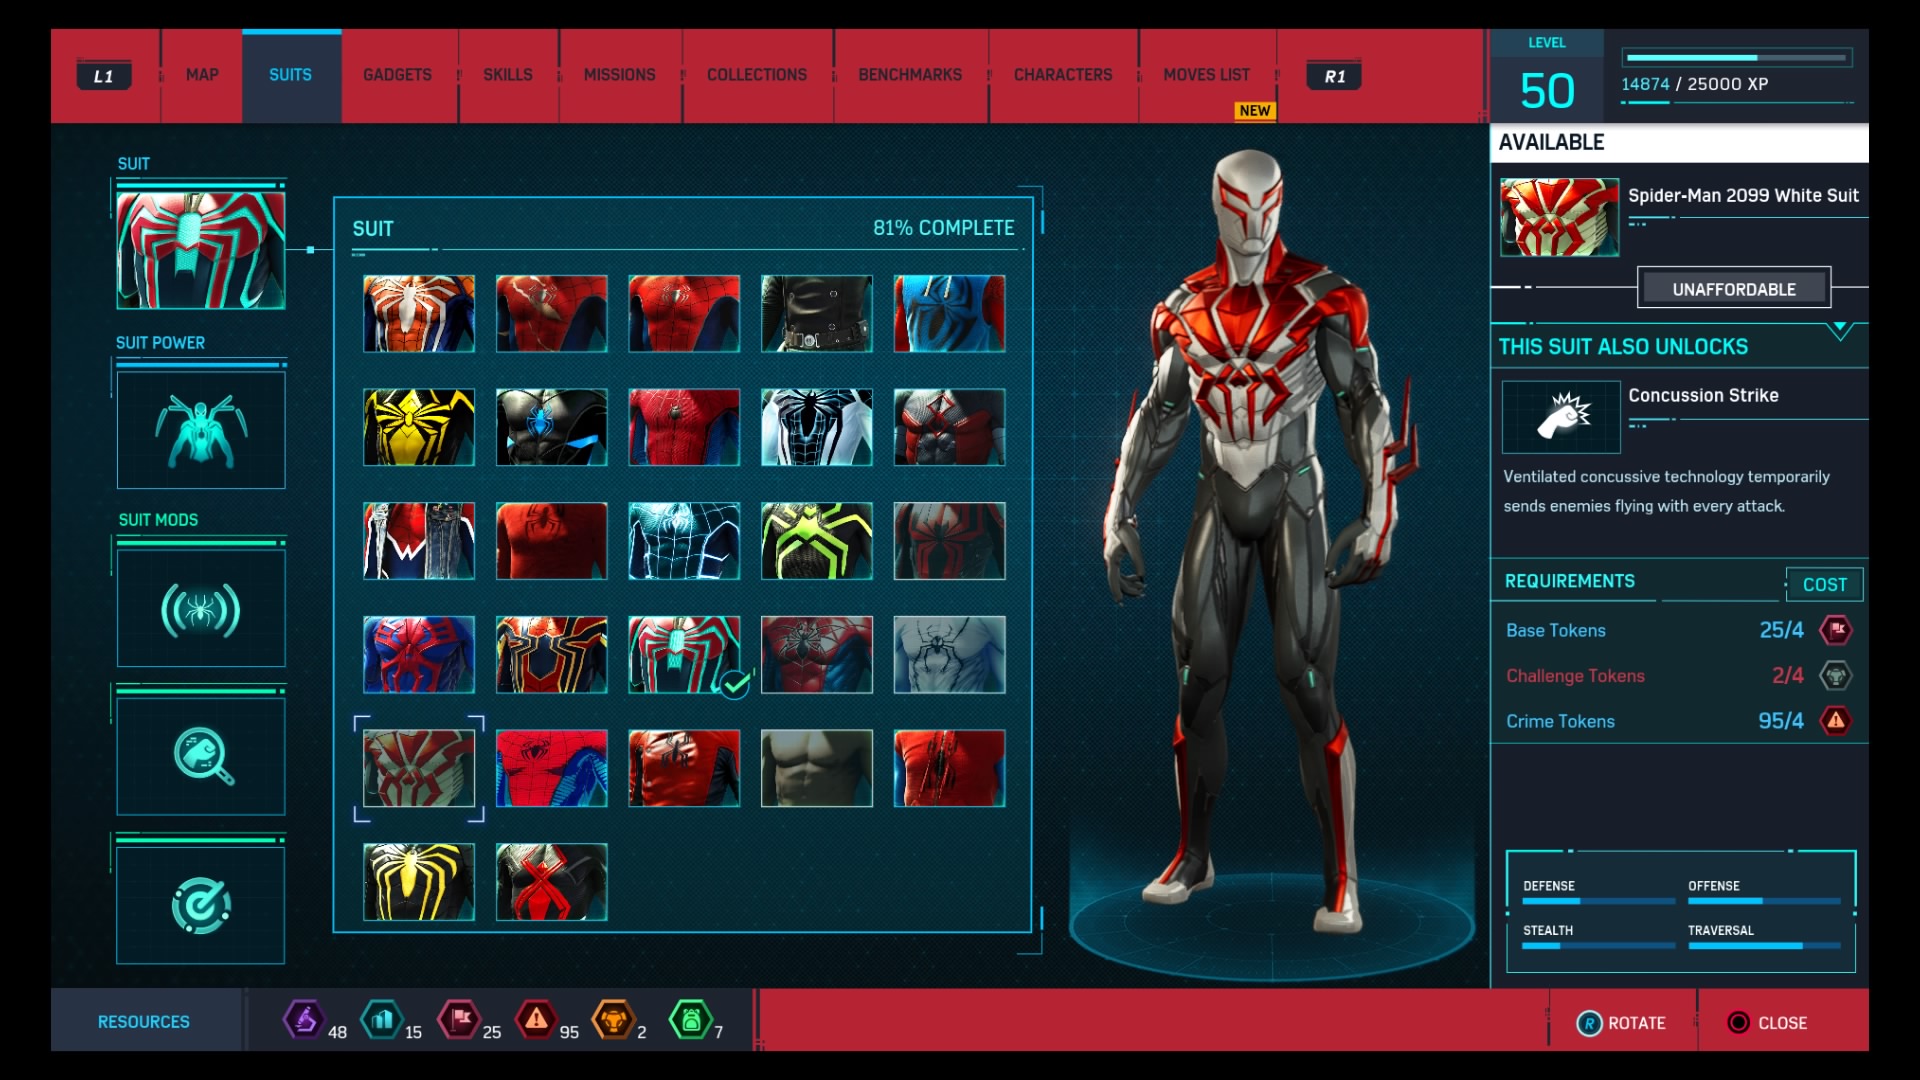 #24 Spider-Man 2099 White Suit